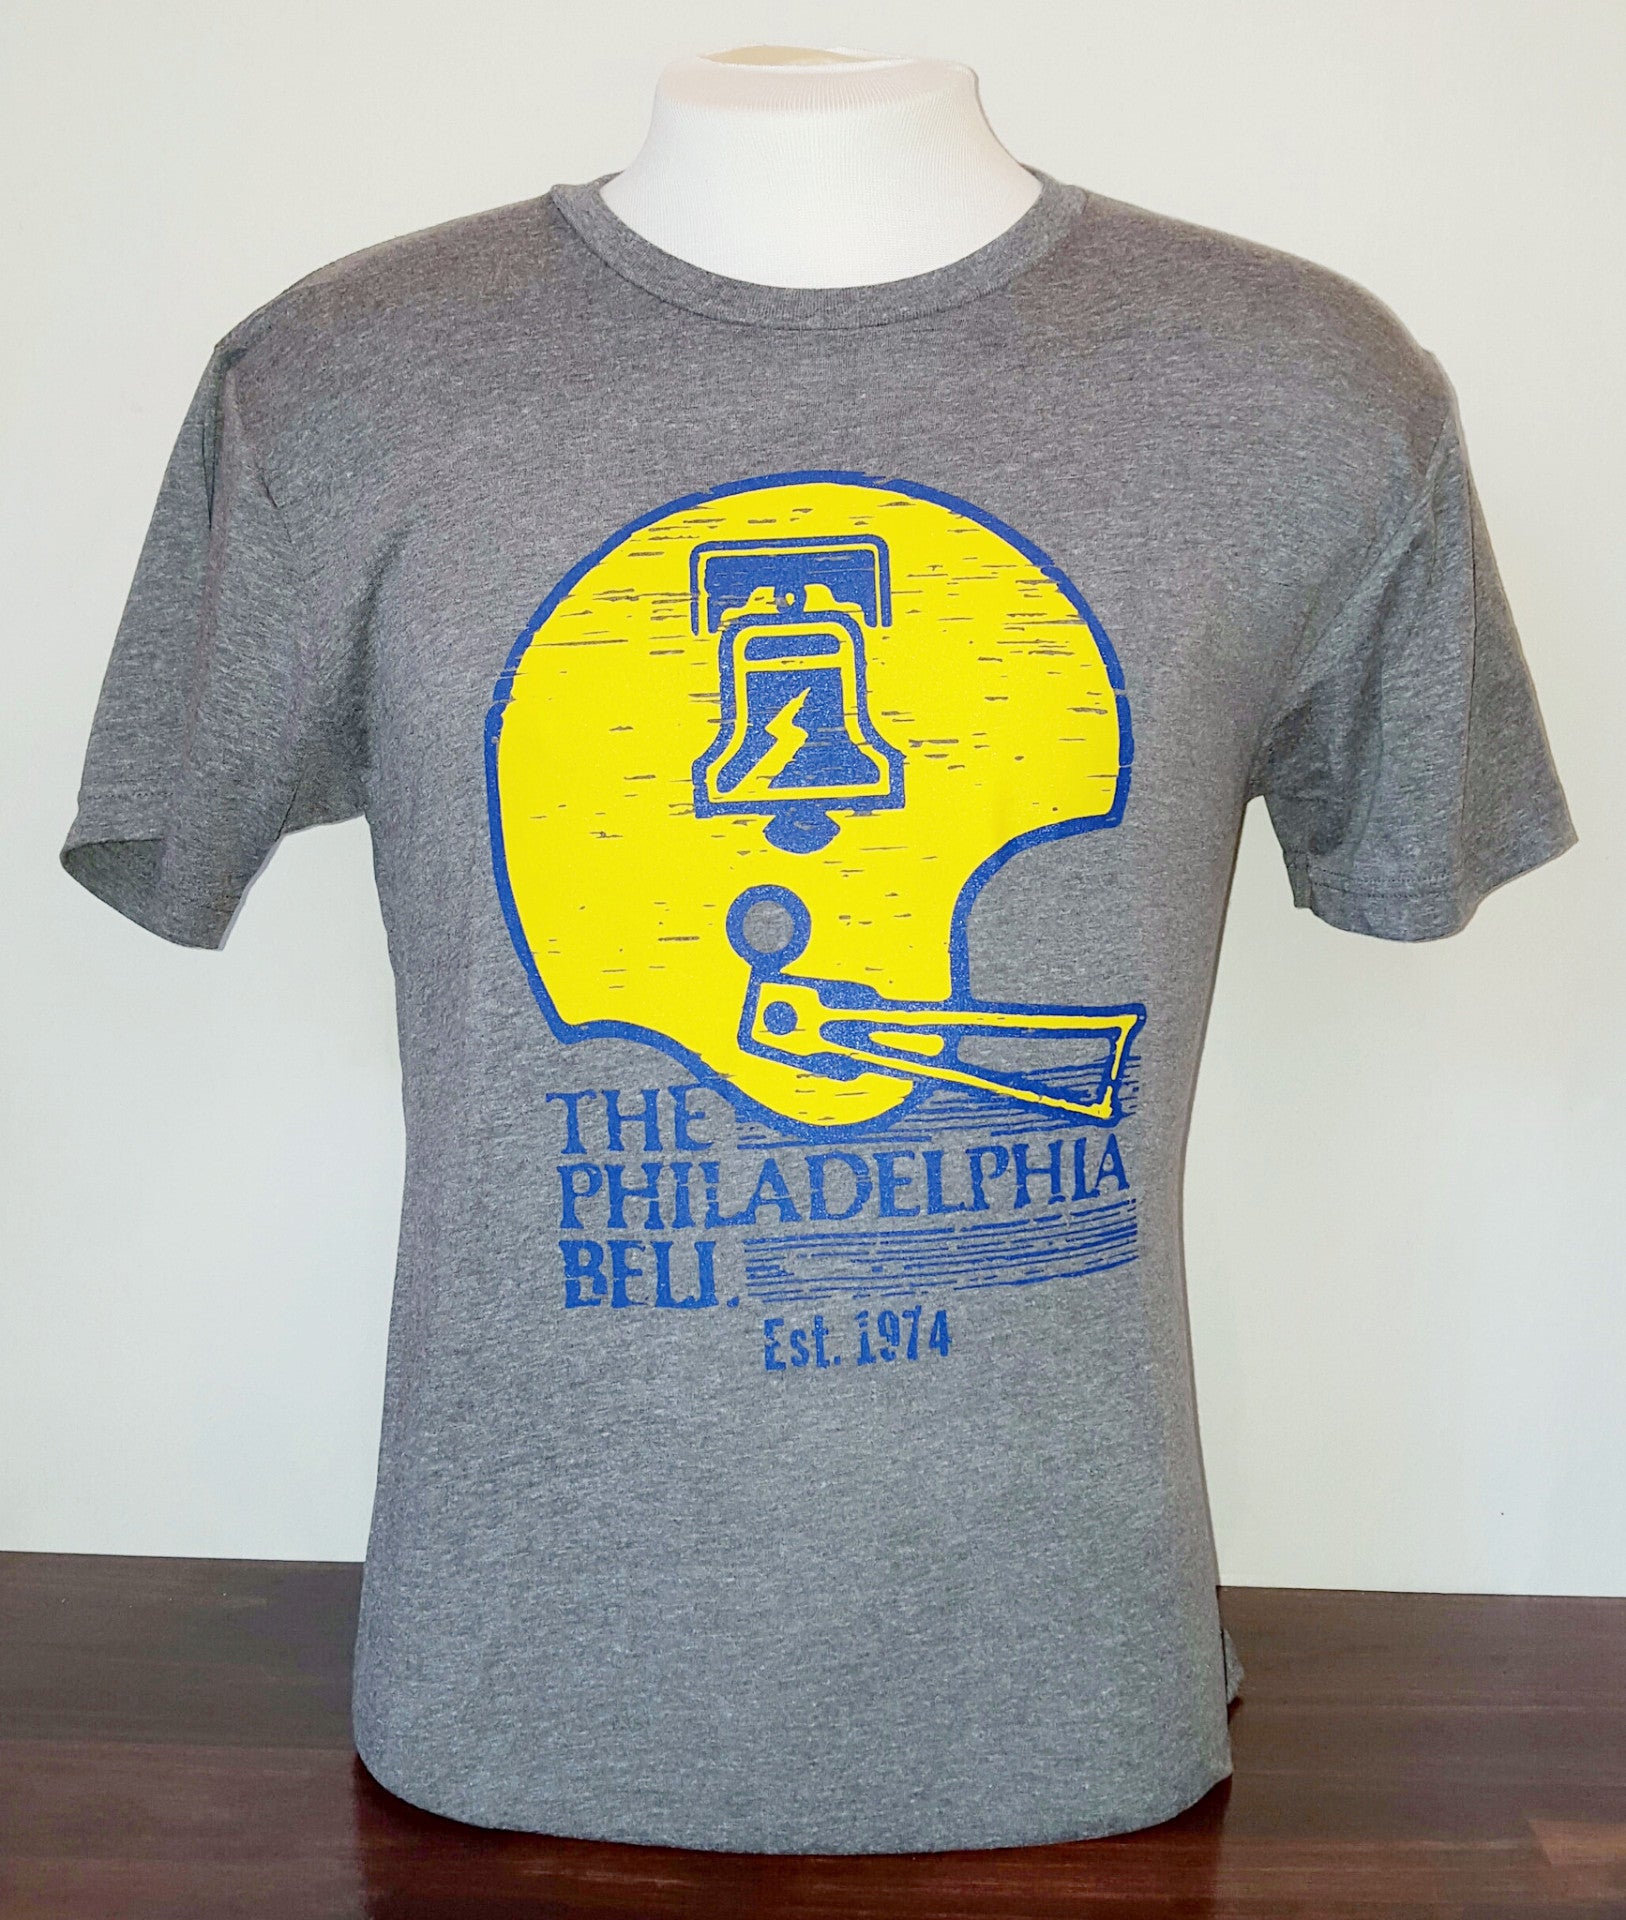 Philadelphia Bell Football Shirt